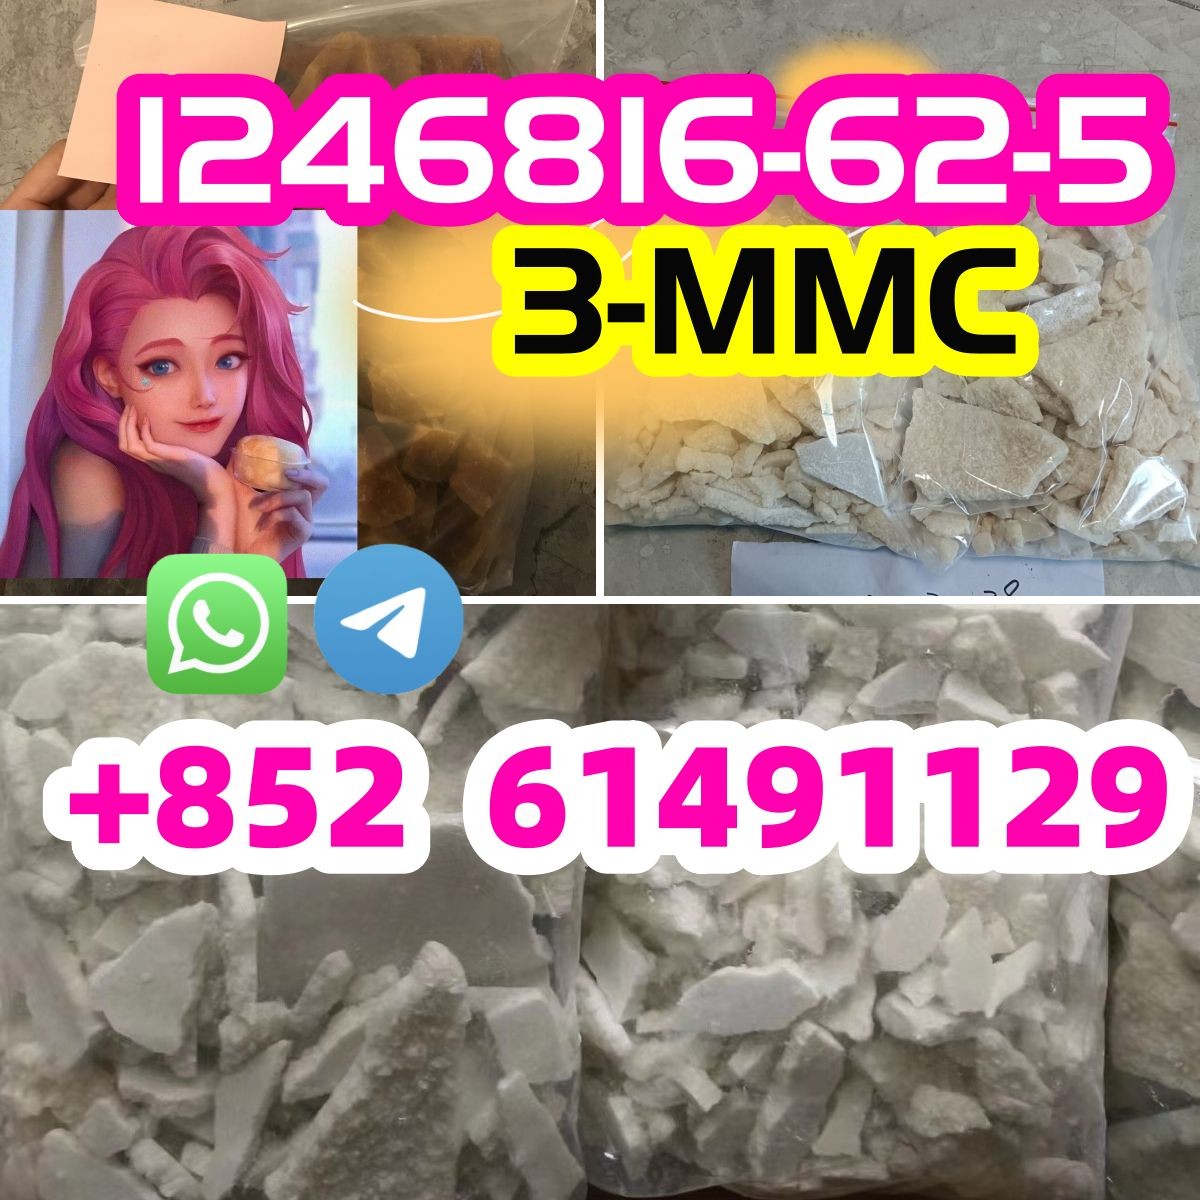 1246816-62-5, 3-MMC ,2-MMC ,4-mmc,1189805-46-6-image